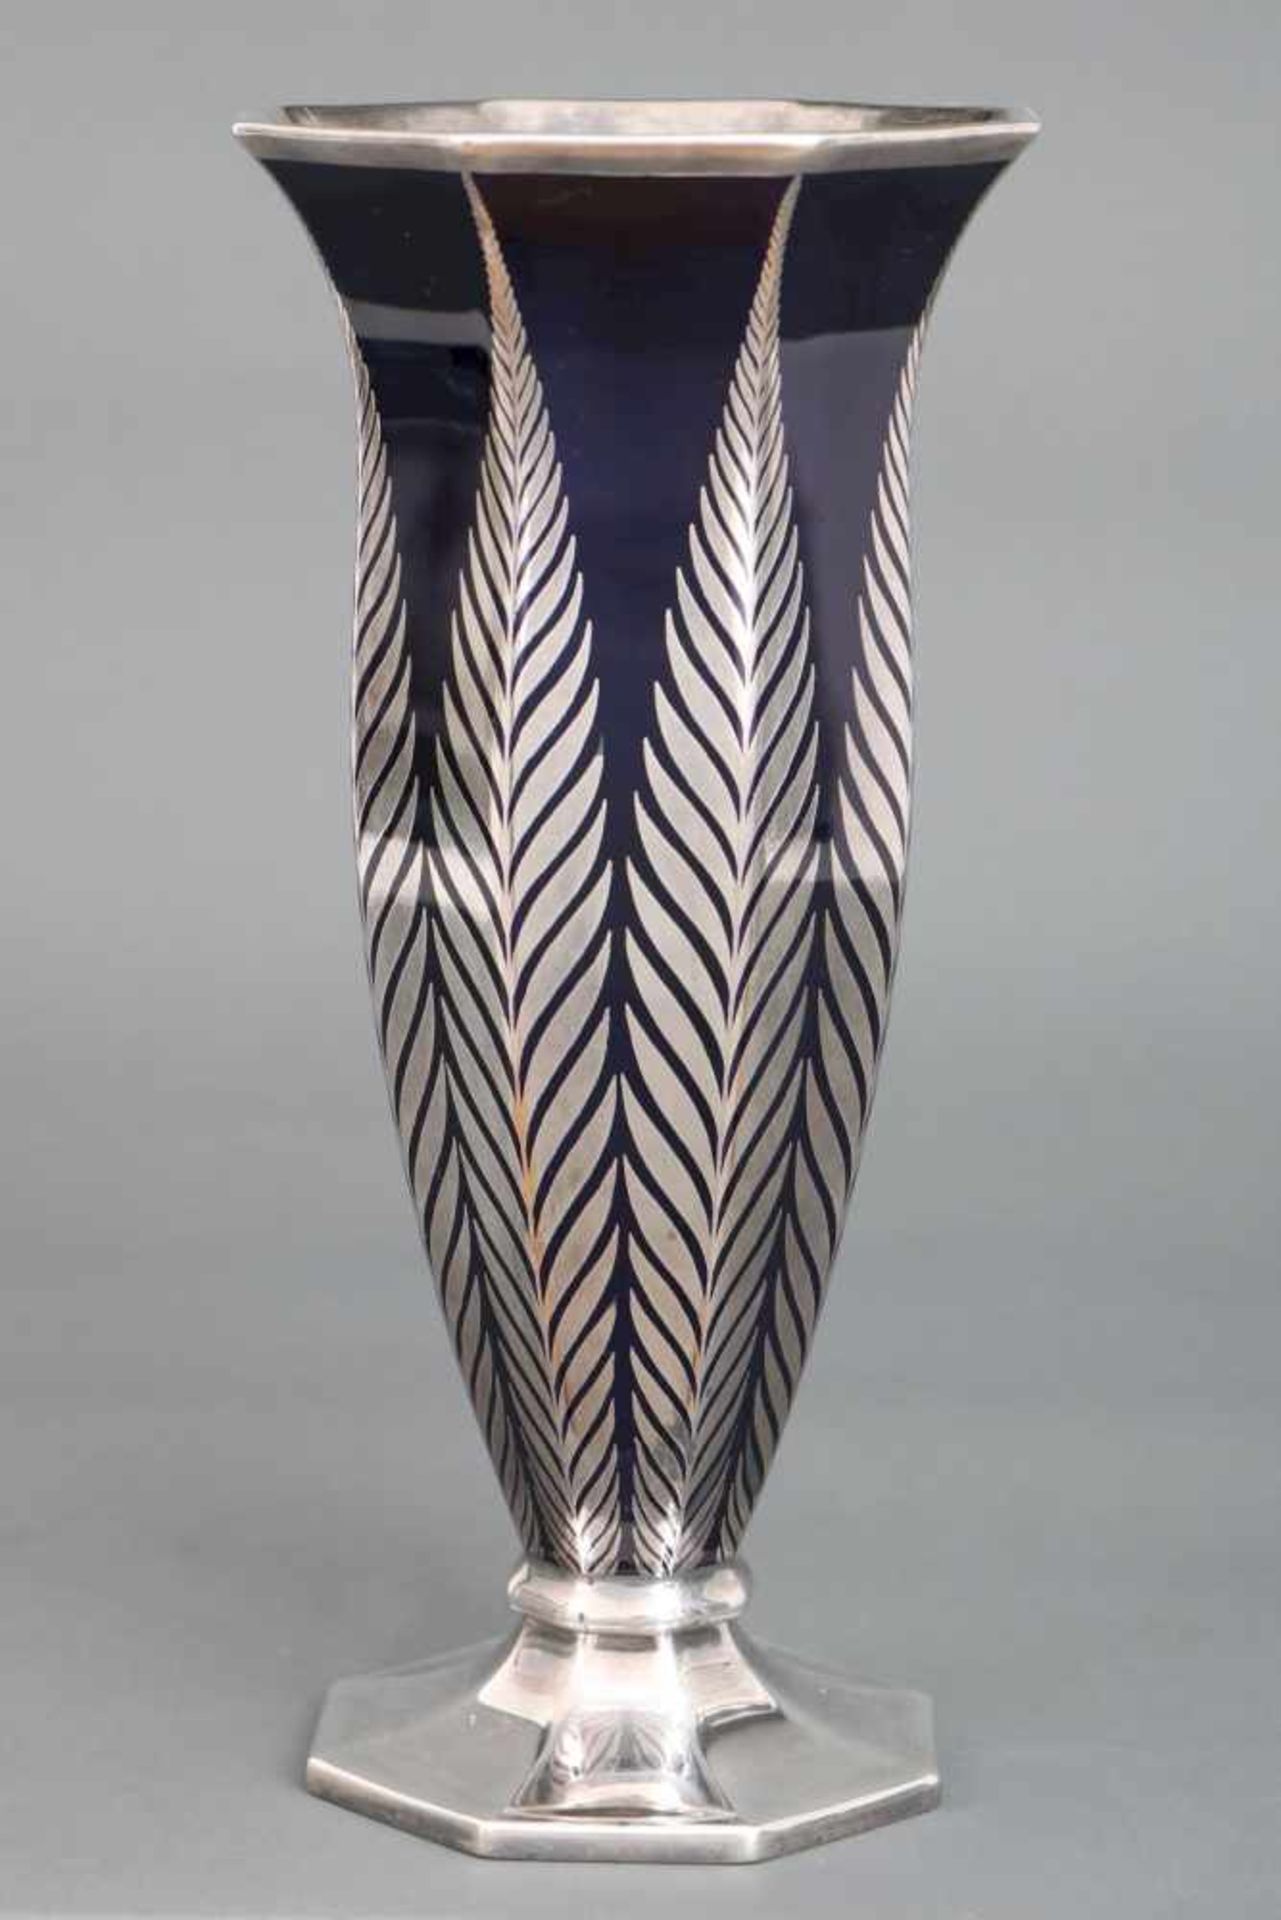 ROSENTHAL Vase mit Silver-overlayum 1920, schlanke, facettierte Kelchform auf polygonalem Stand,